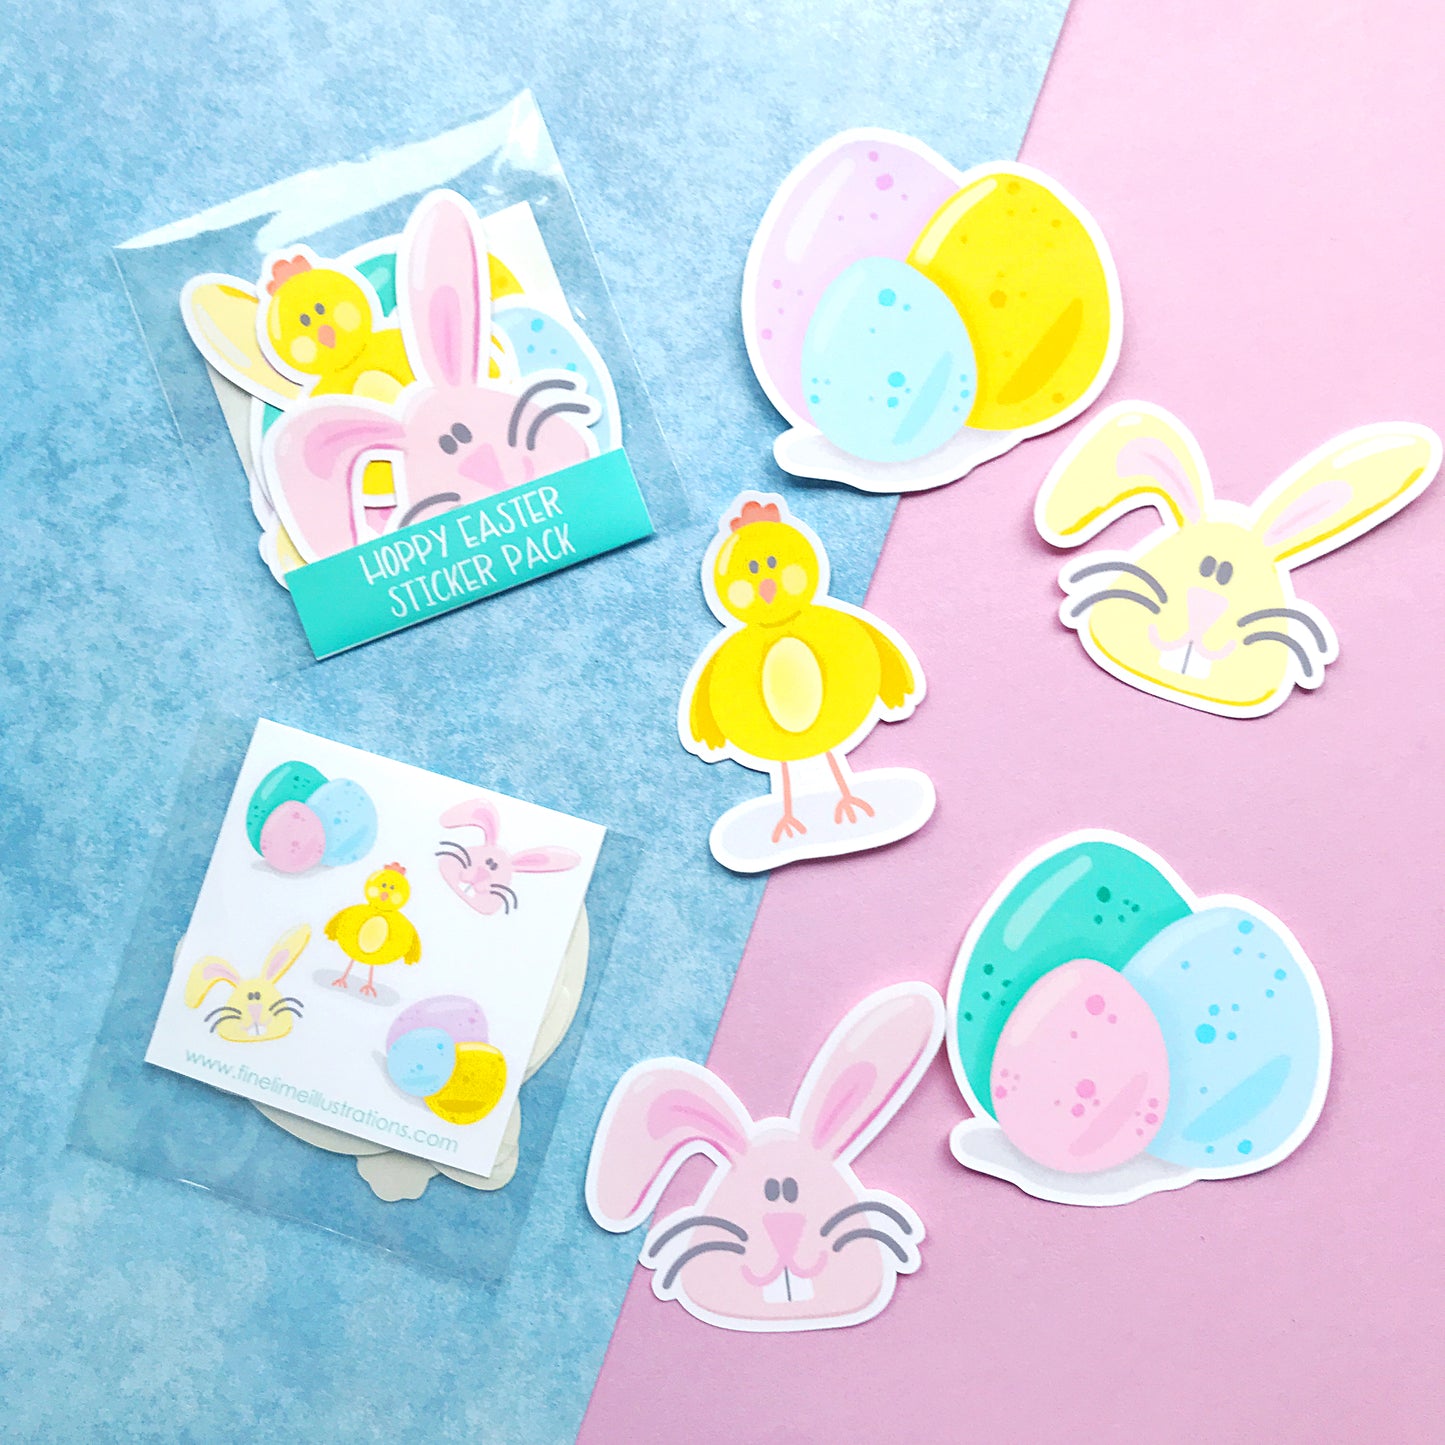 Hoppy Easter Sticker Pack